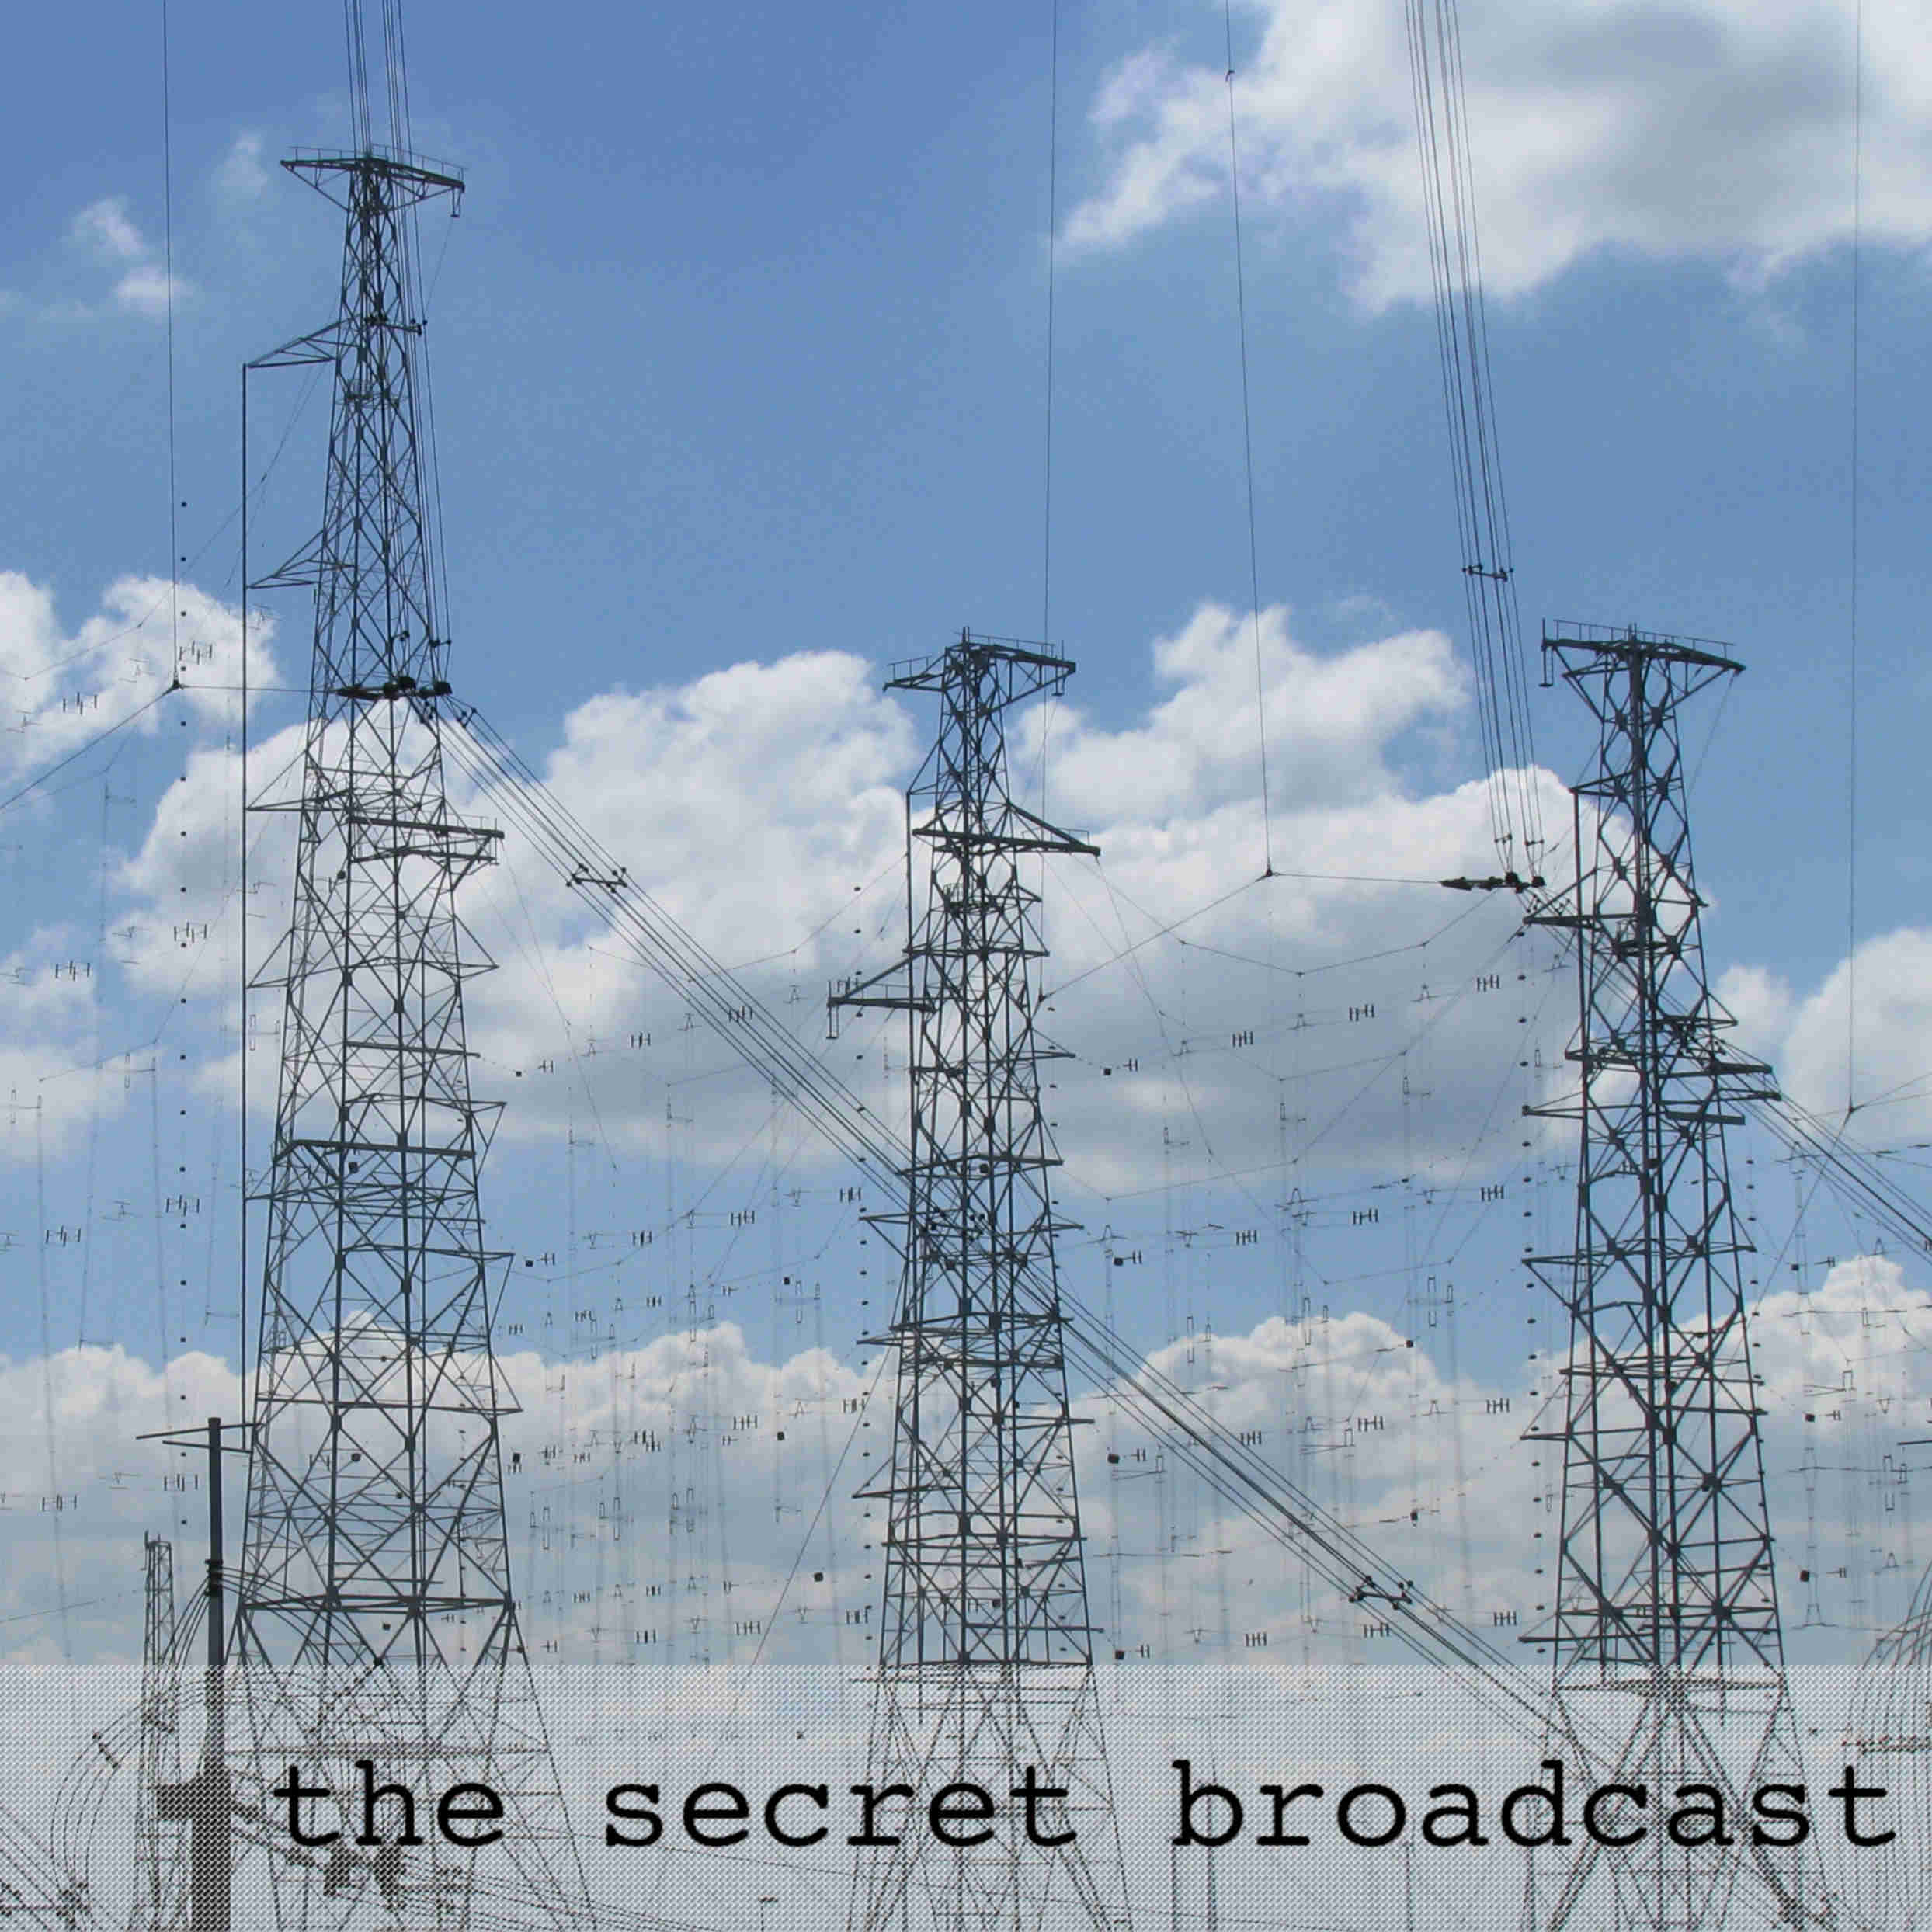 A shortwave broadcast station